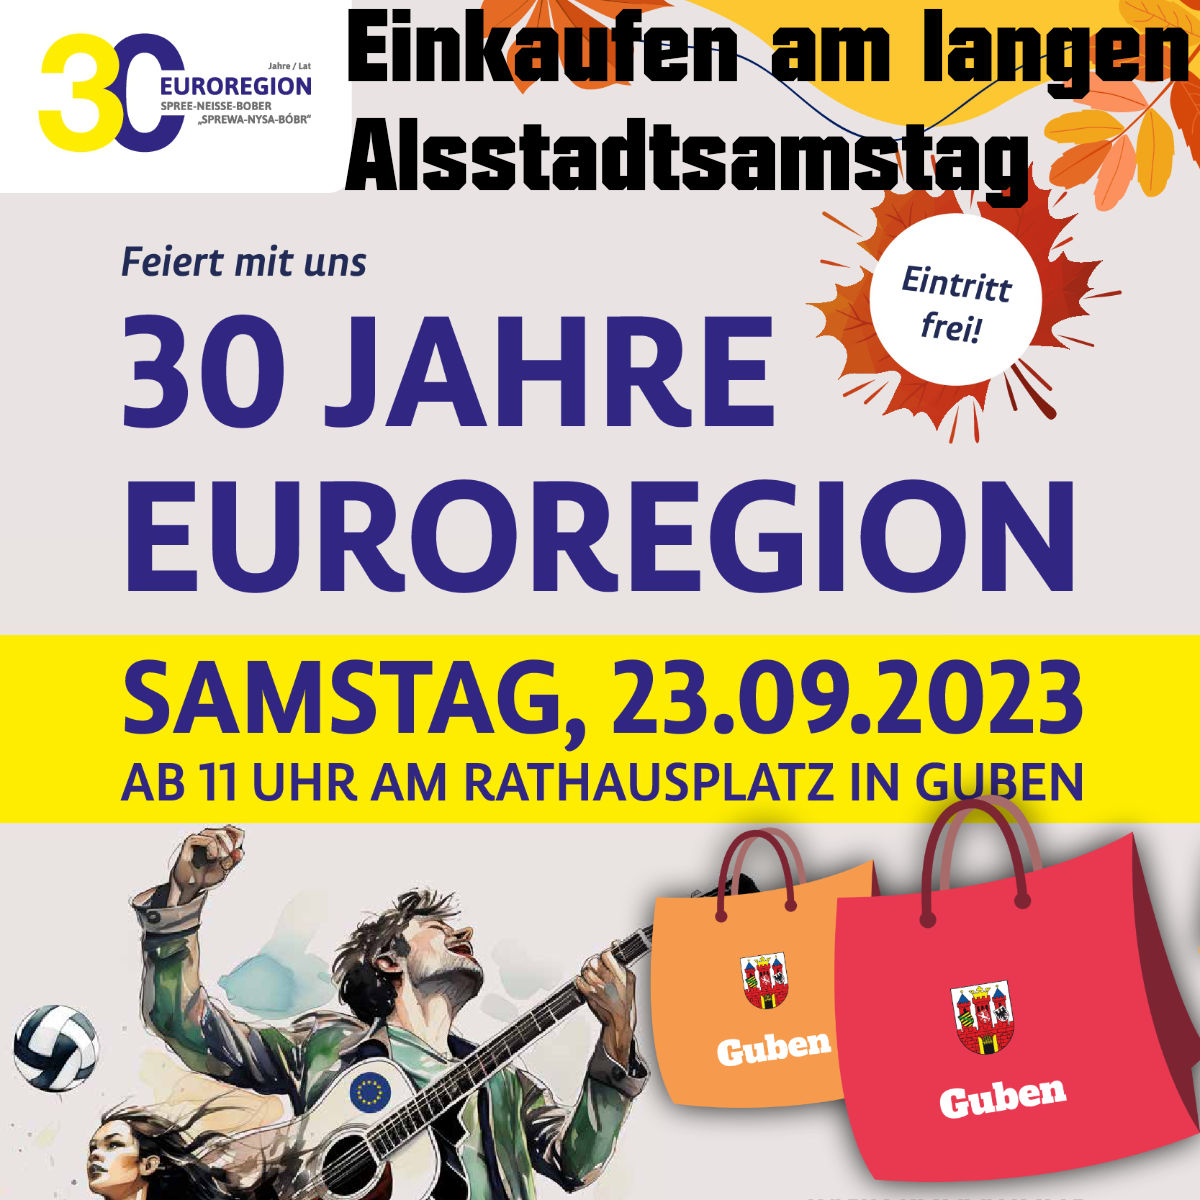 Langer Altstadtsamstag zu 30 Jahre Euroregion 2023